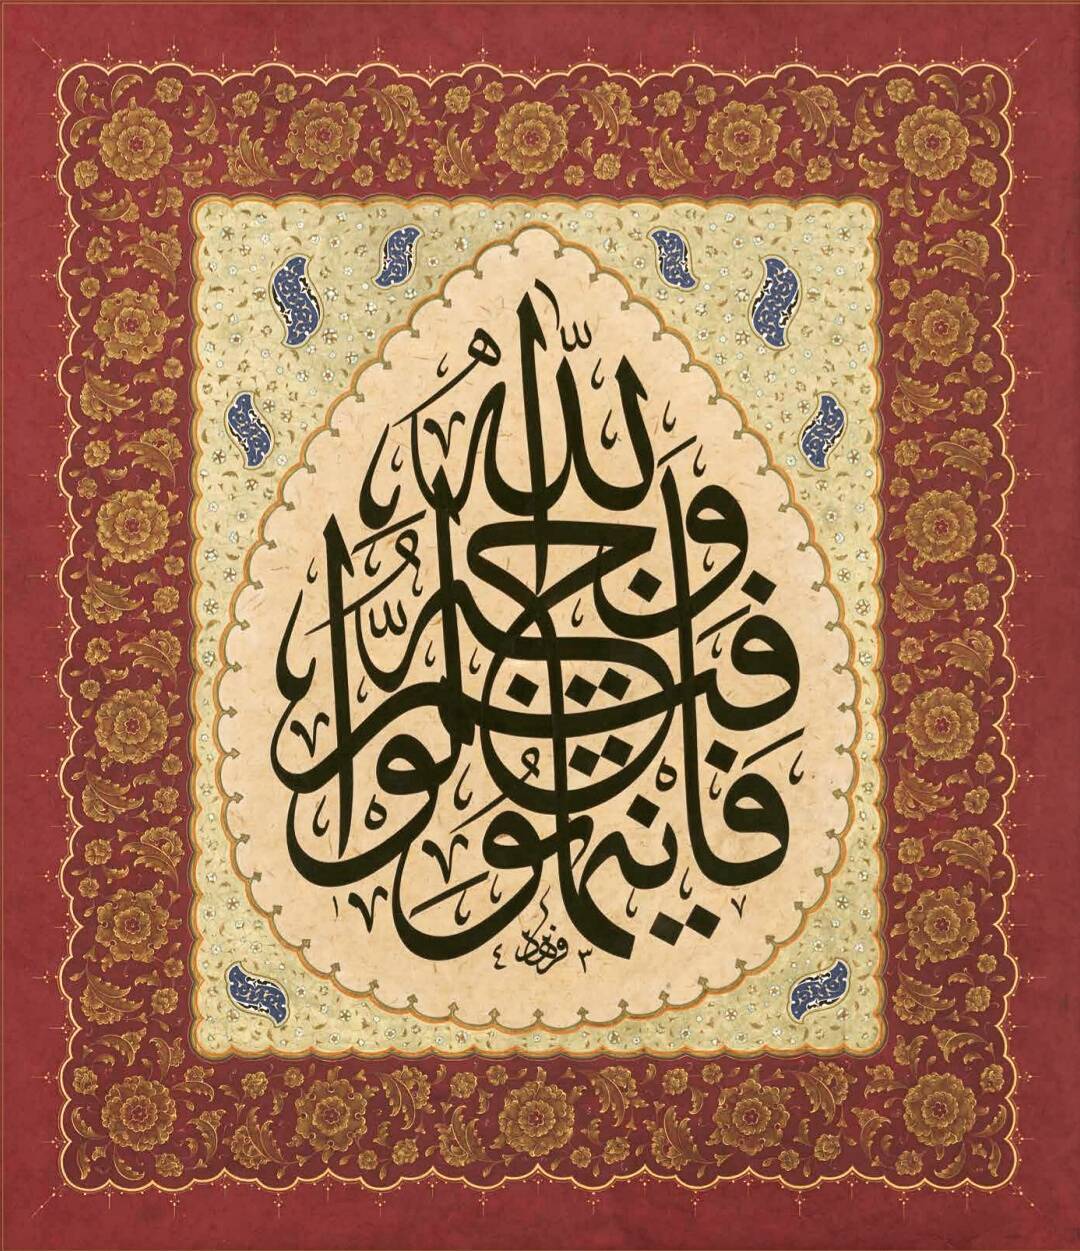 Karya Kaligrafi فاينماتولوافثم وجه الله
Yönünüzü hernereye dönerseniz Allahın vechi oradadır.
B…- Ferhat Kurlu